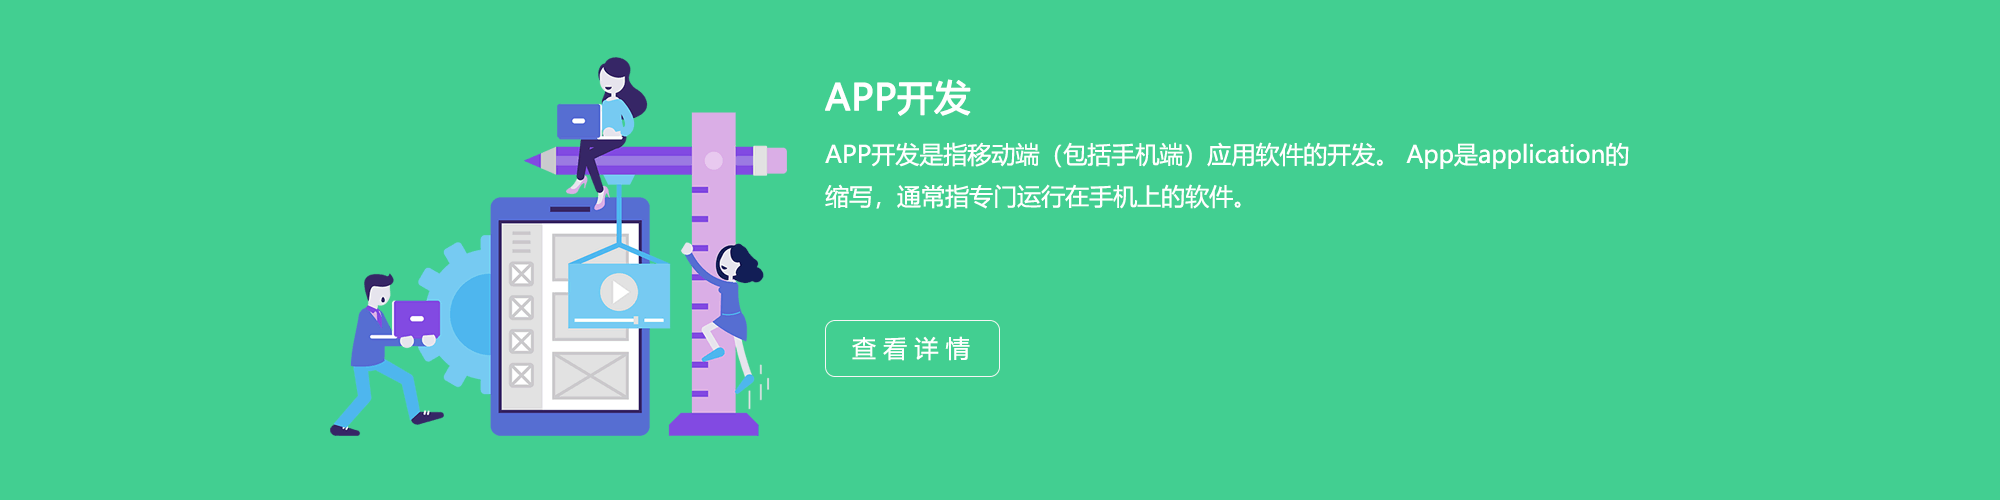 义乌APP开发公司